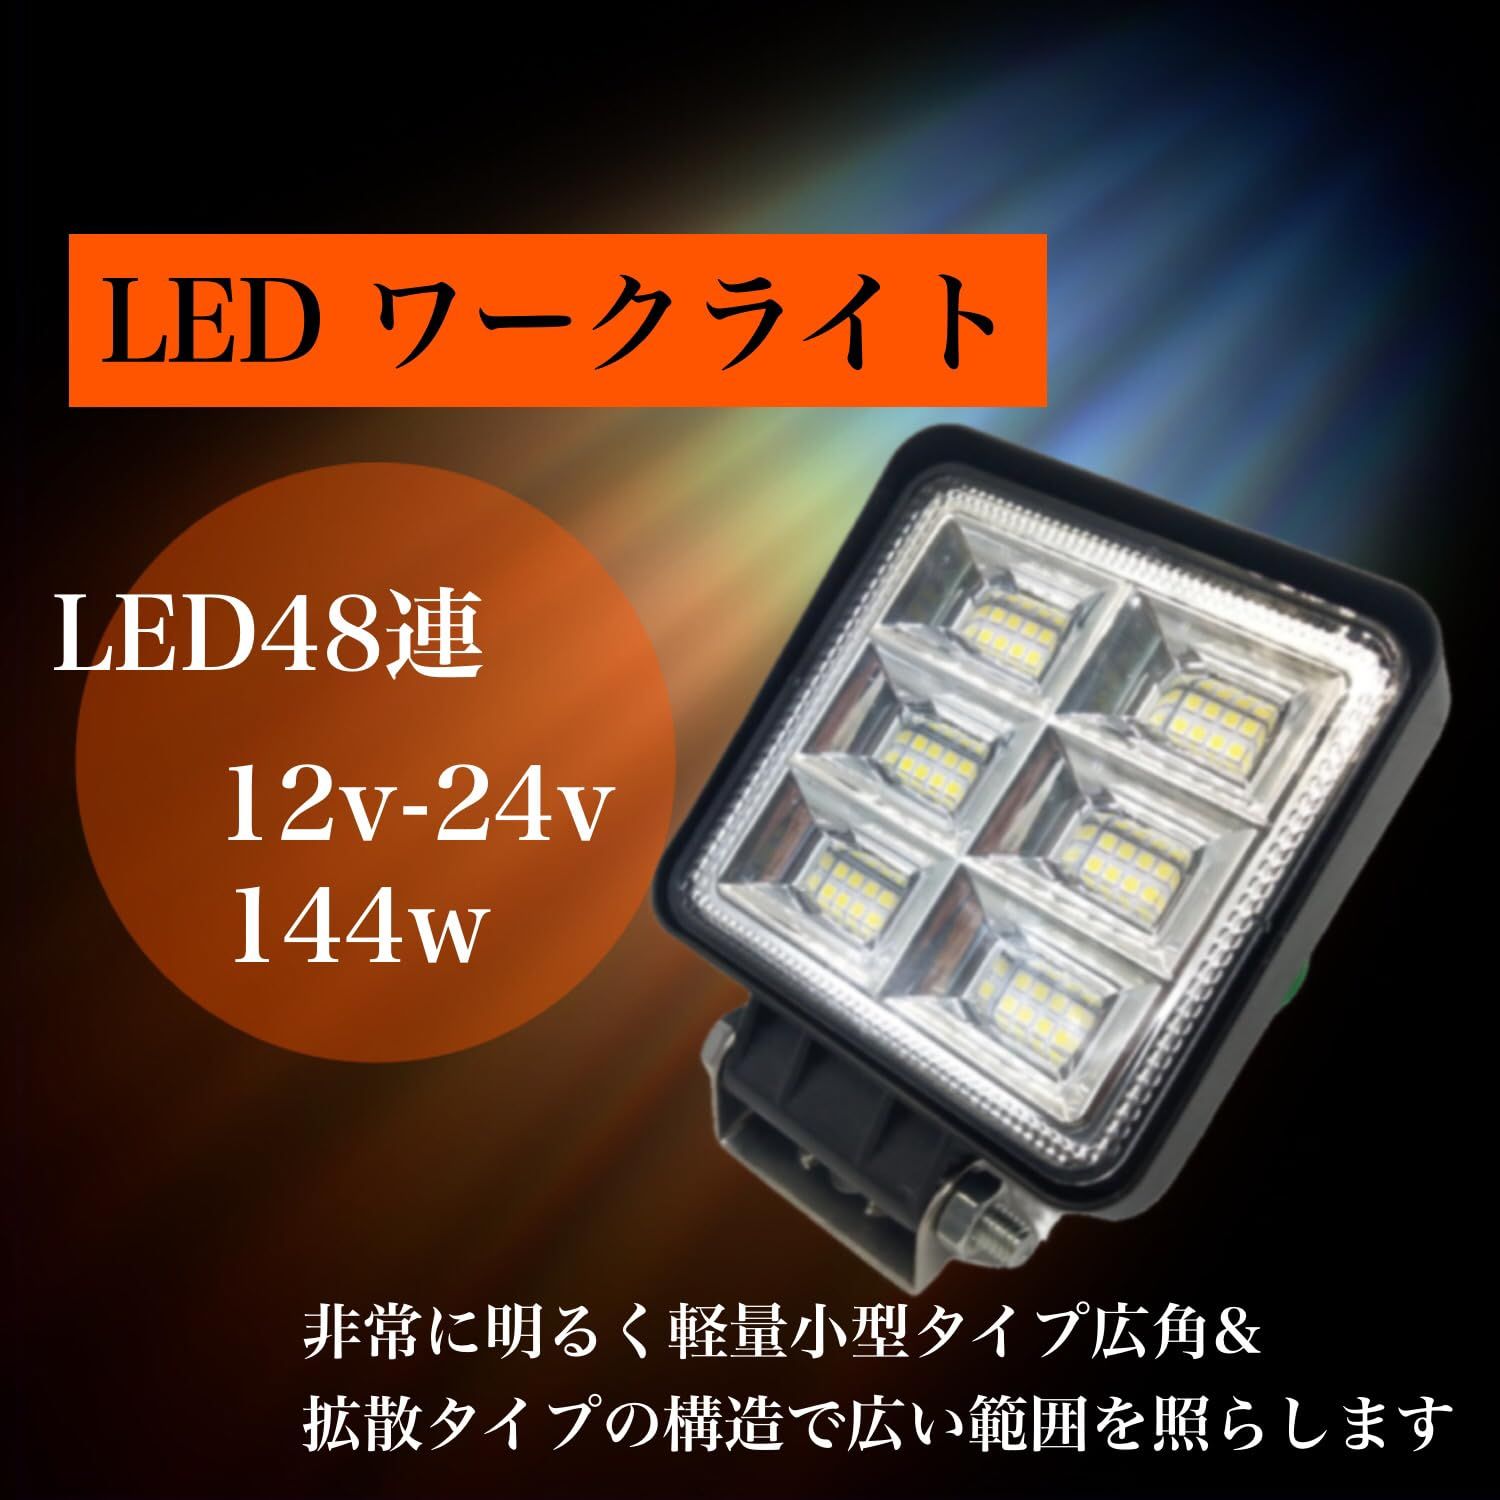 Optimister ワークライト 作業用ライト 作業灯 led LED 144w 12v-24v 